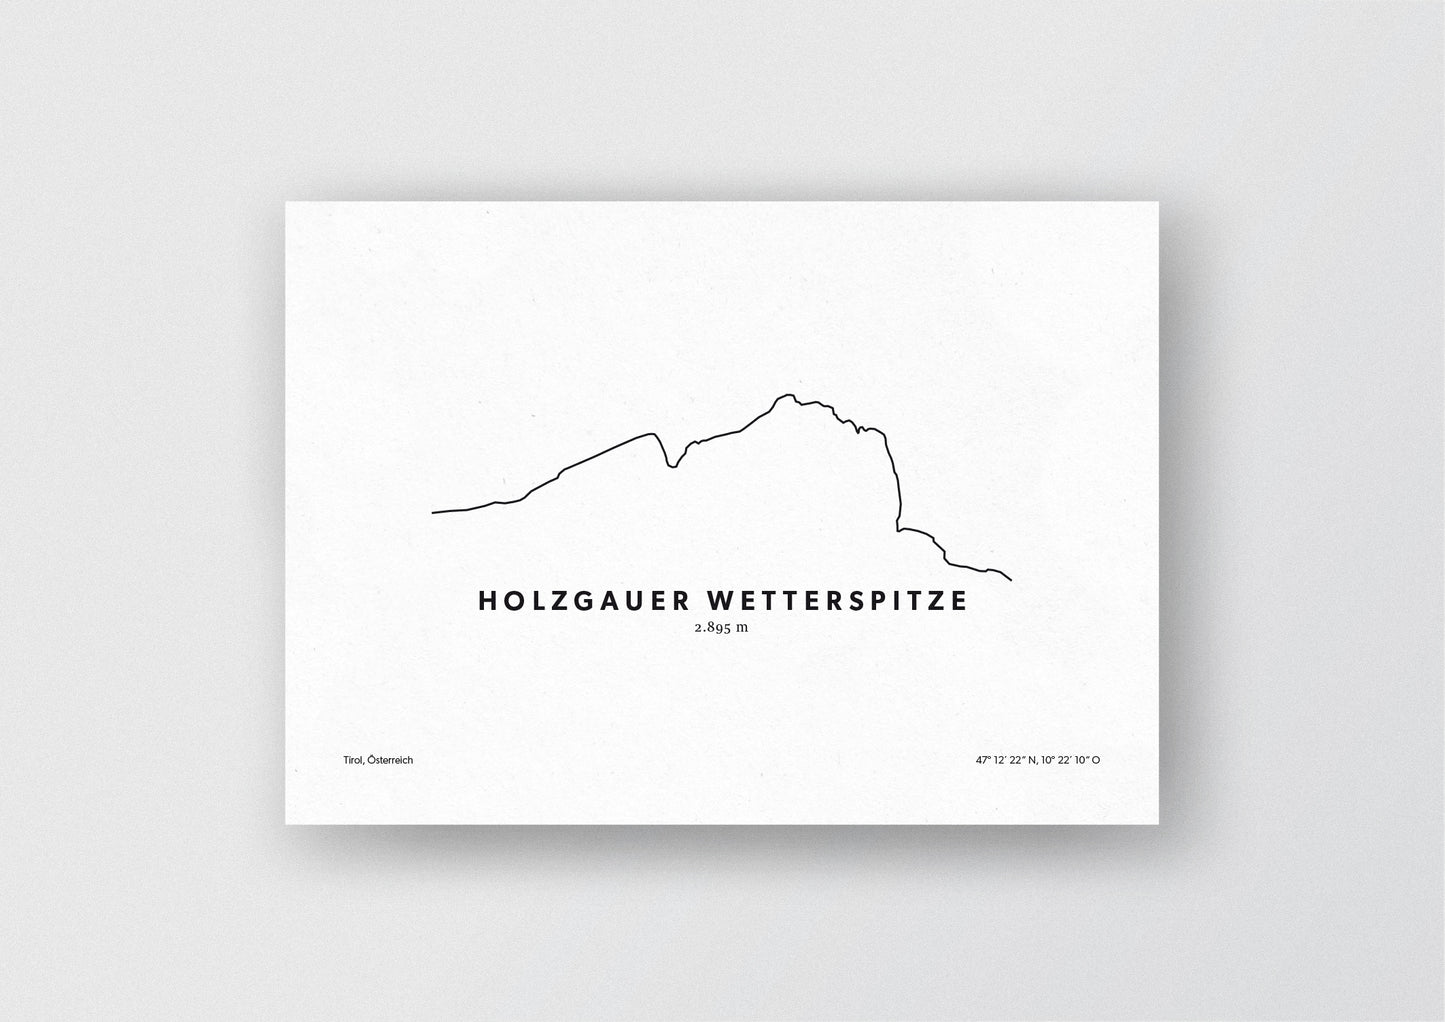 Minimalistische Illustration der Holzgauer Wetterspitze in Tirol, als stilvoller Einrichtungsgegenstand für Zuhause.